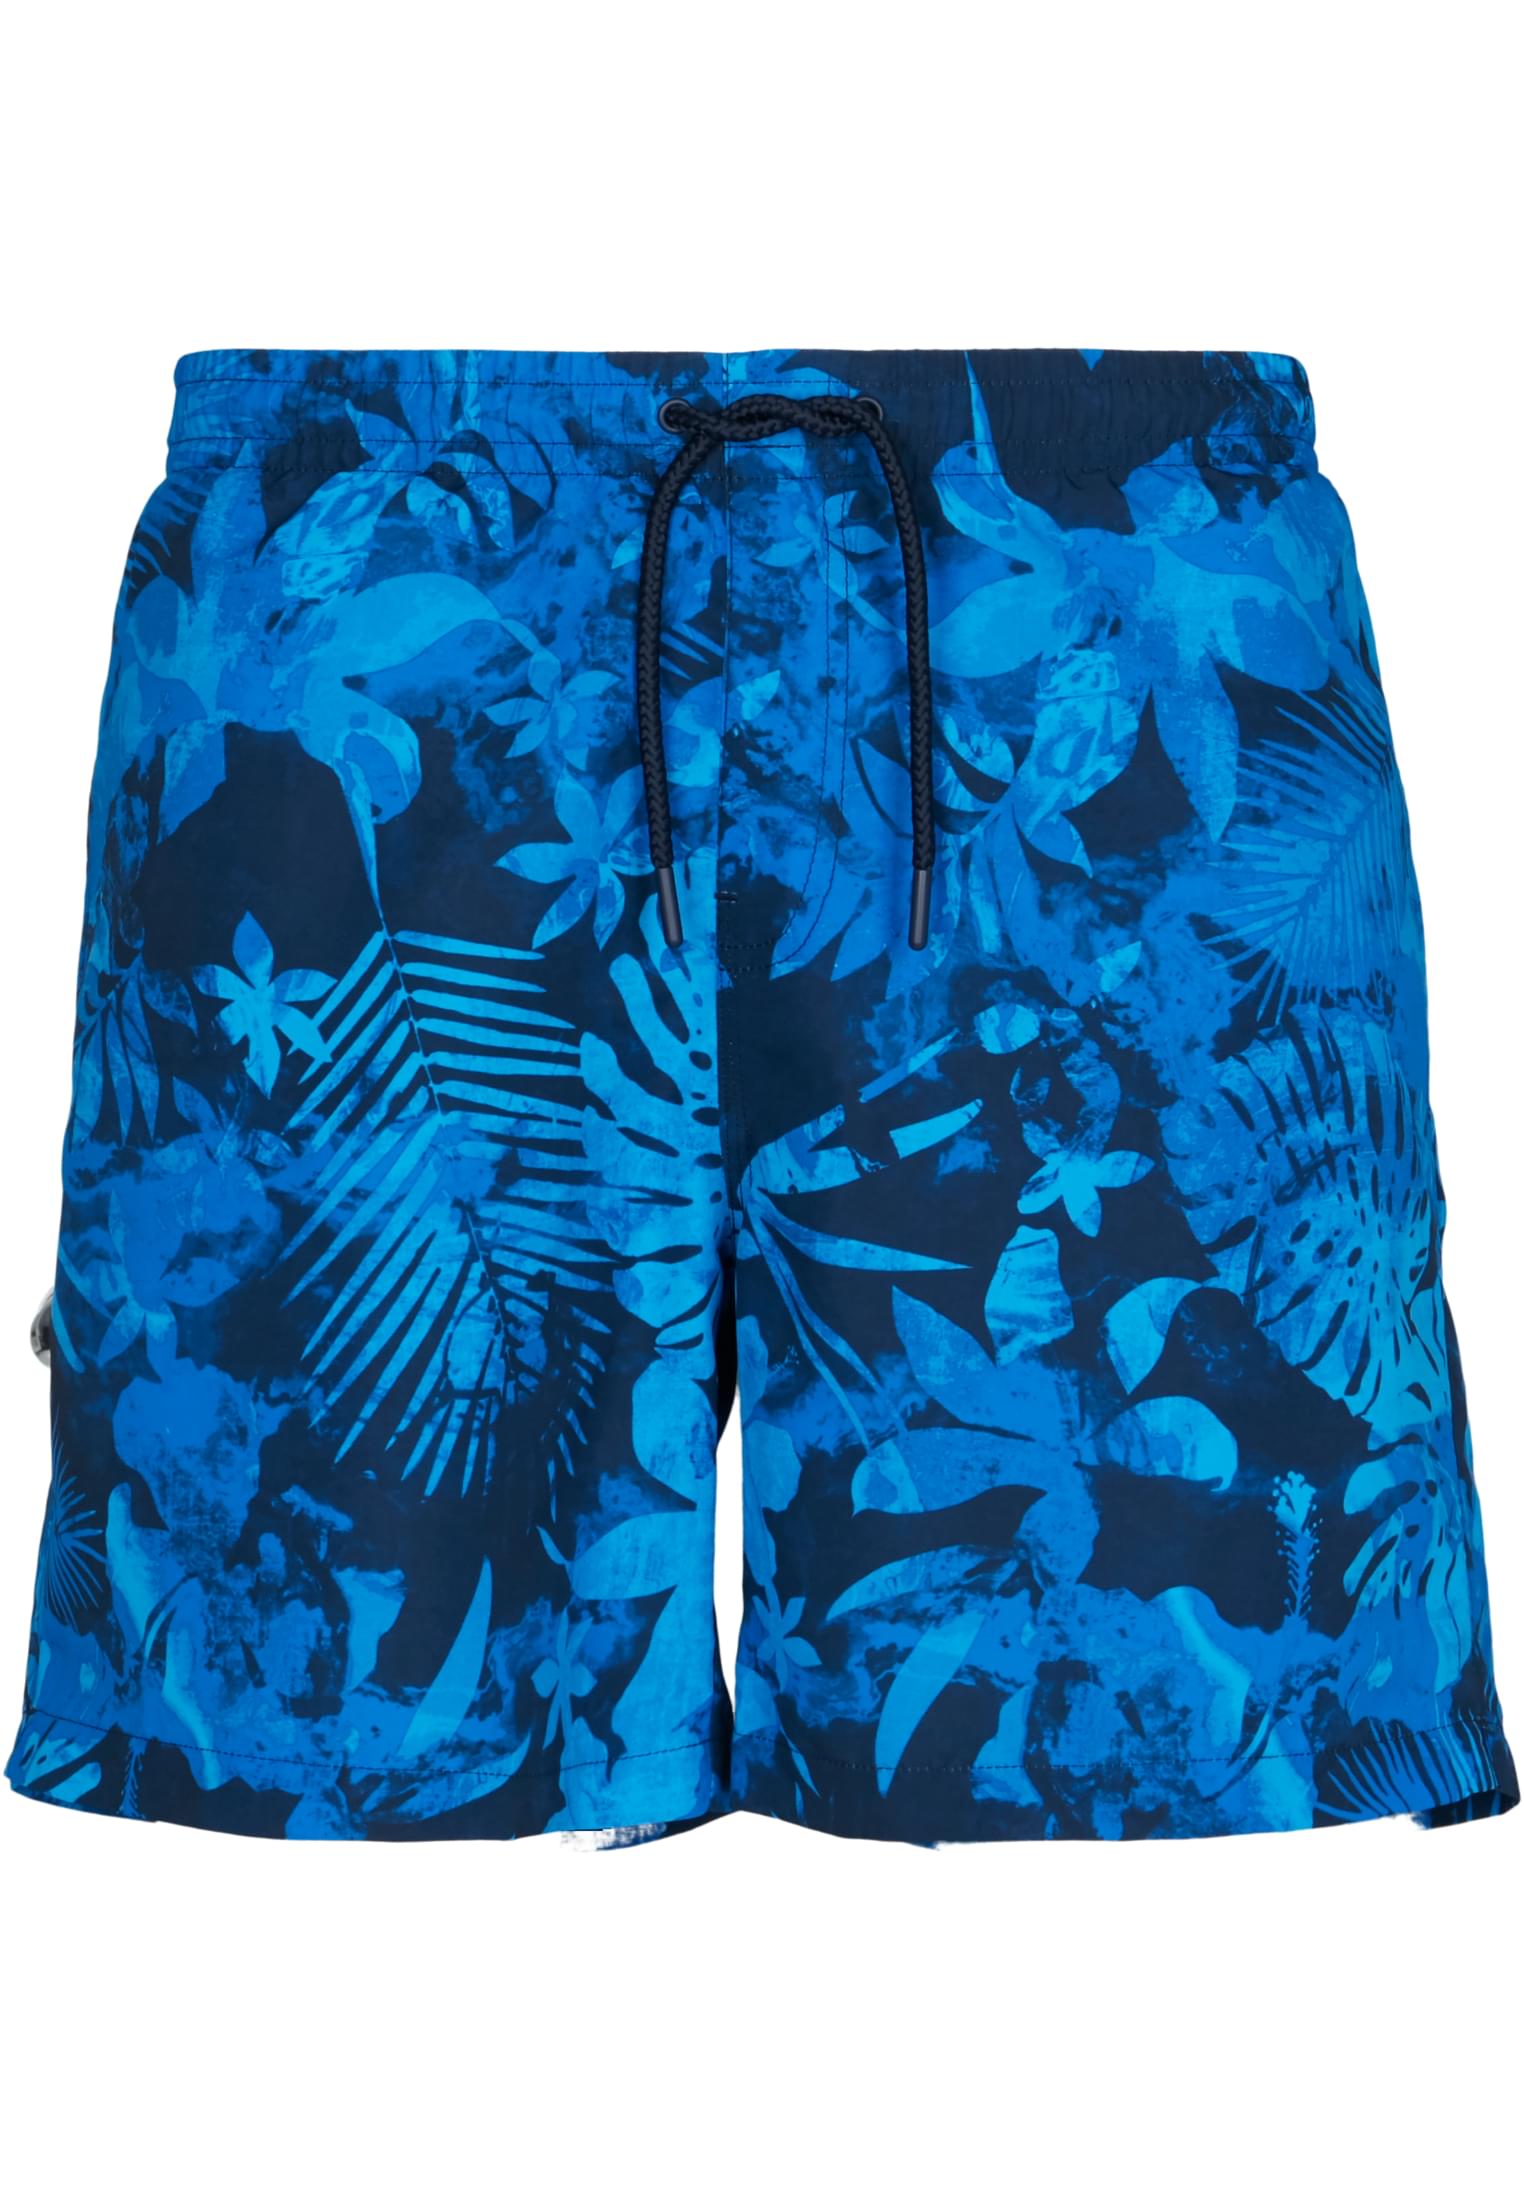 Swimsuit pattern shorts blue flower